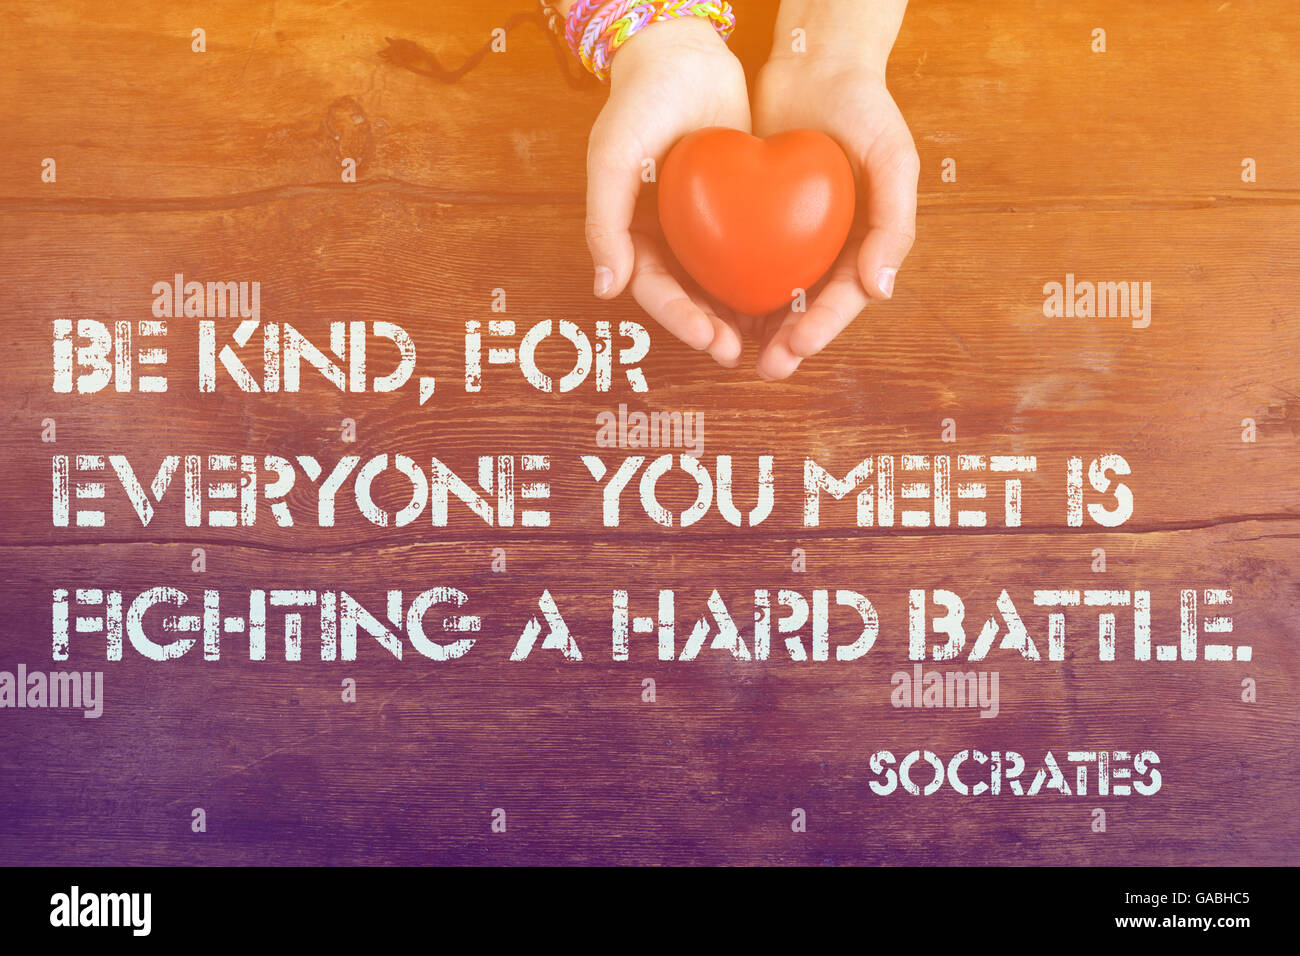 Essere gentile, per chiunque si incontra - antico filosofo greco Socrate preventivo stampato su immagine di mani con cuore Foto Stock